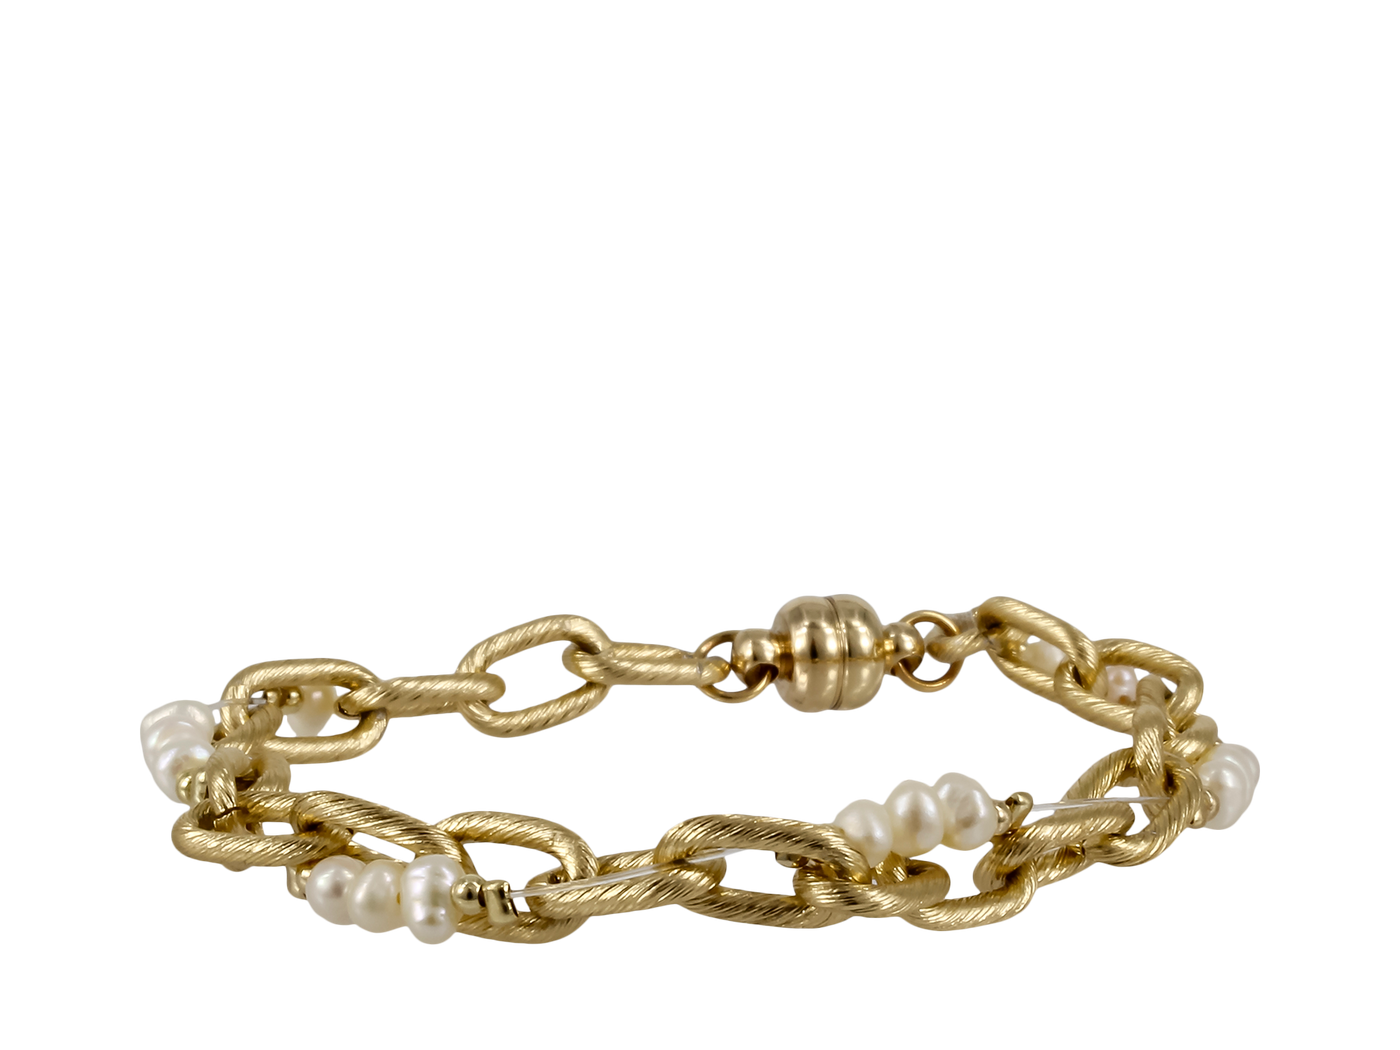 Erimish Gold Chain Archway Bracelet - Little Prairie Girl